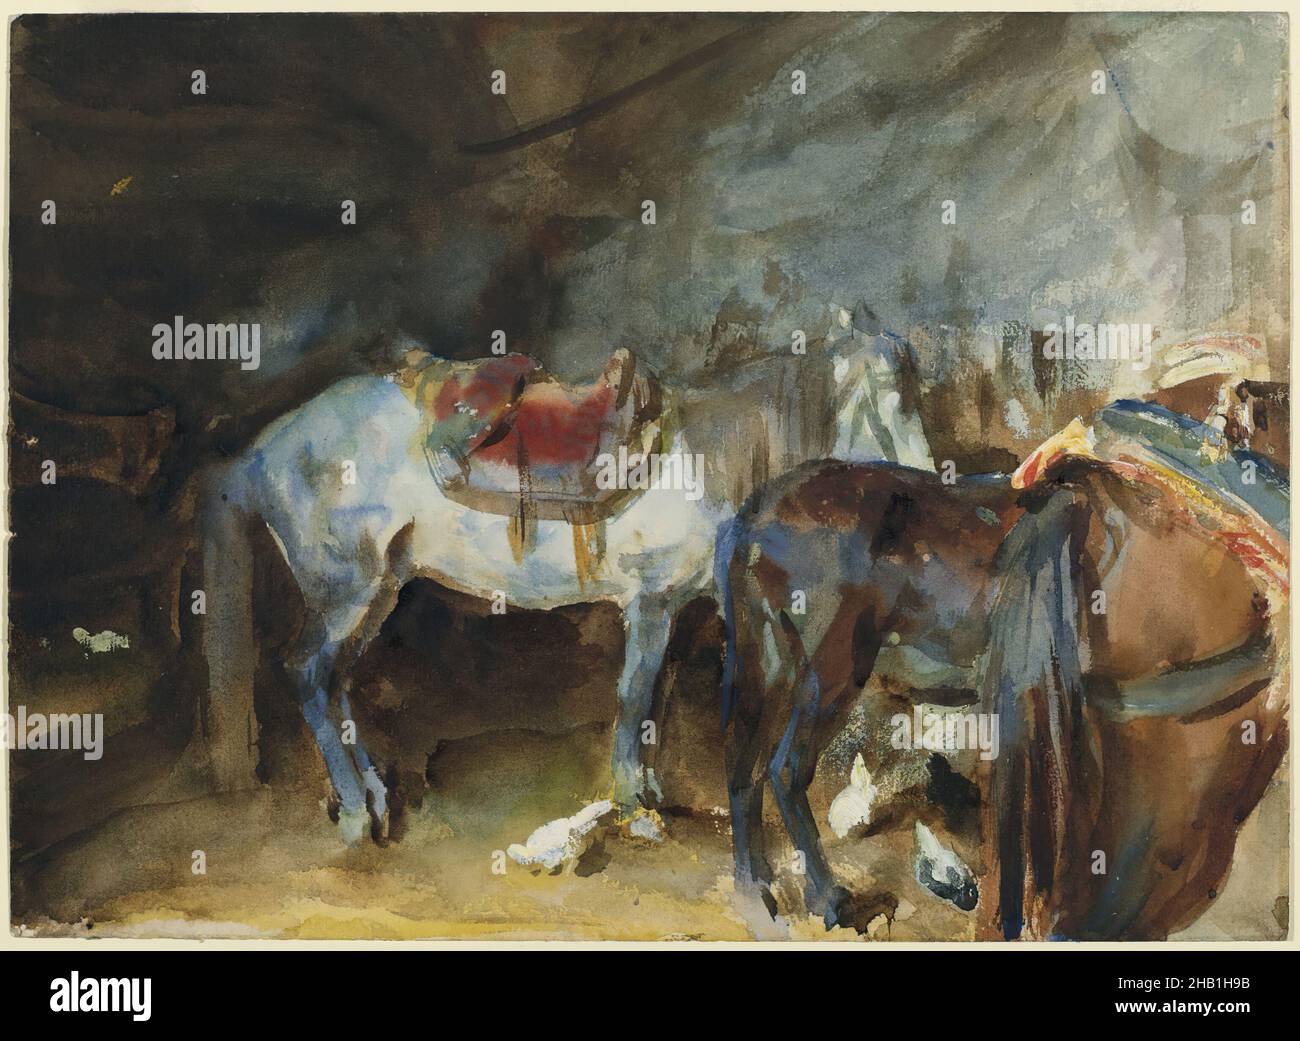 Arab stable, John Singer Sargent, américain, né en Italie, 1856 ...